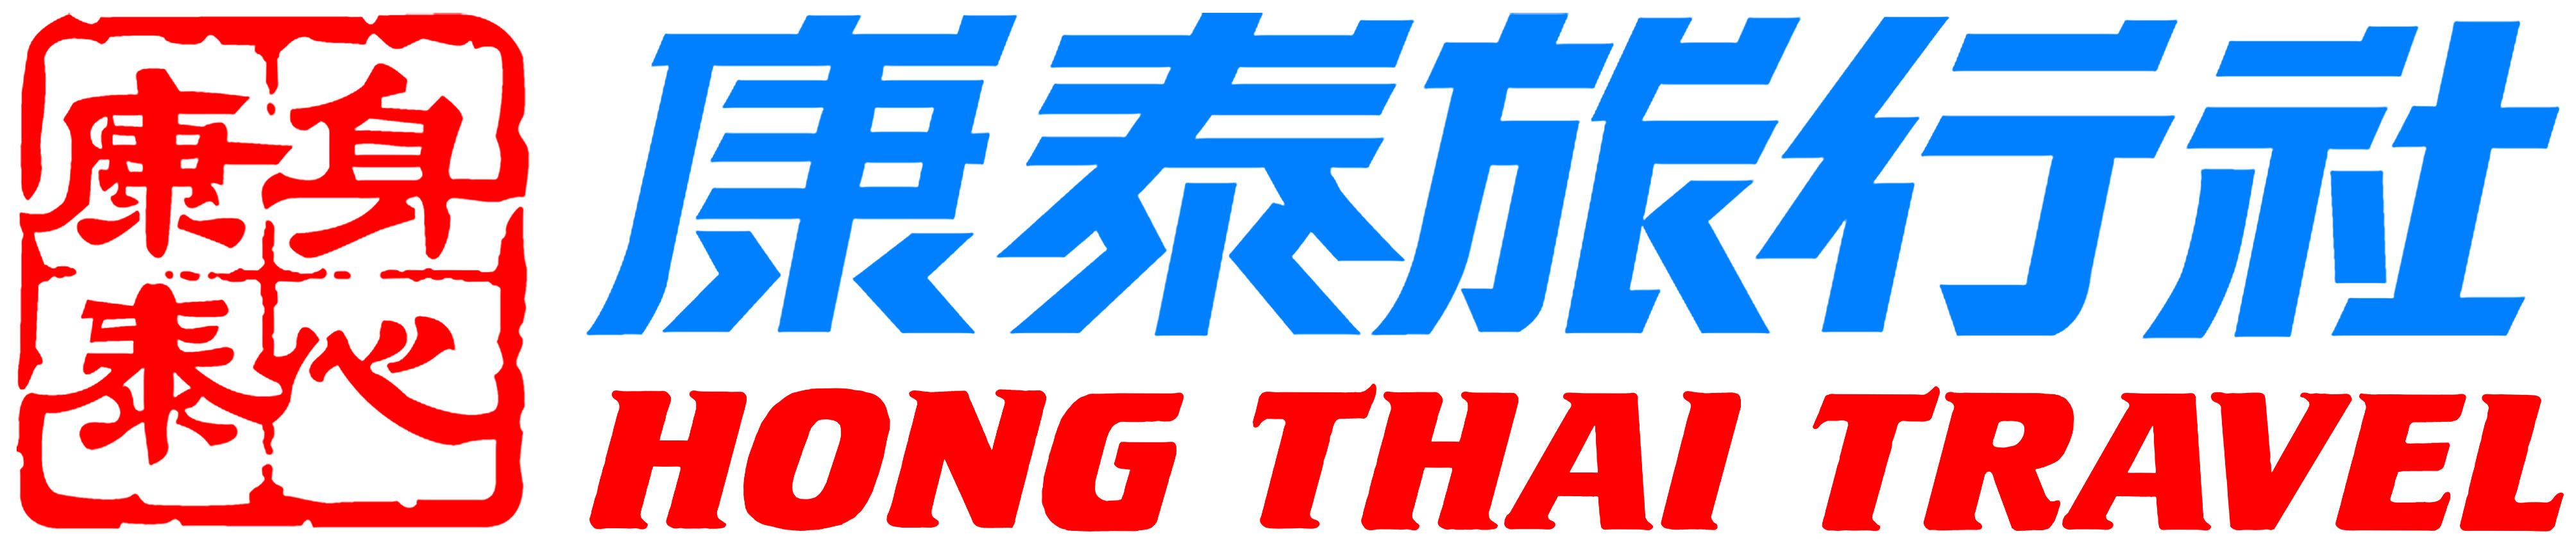 hong thai travel agency sha tin